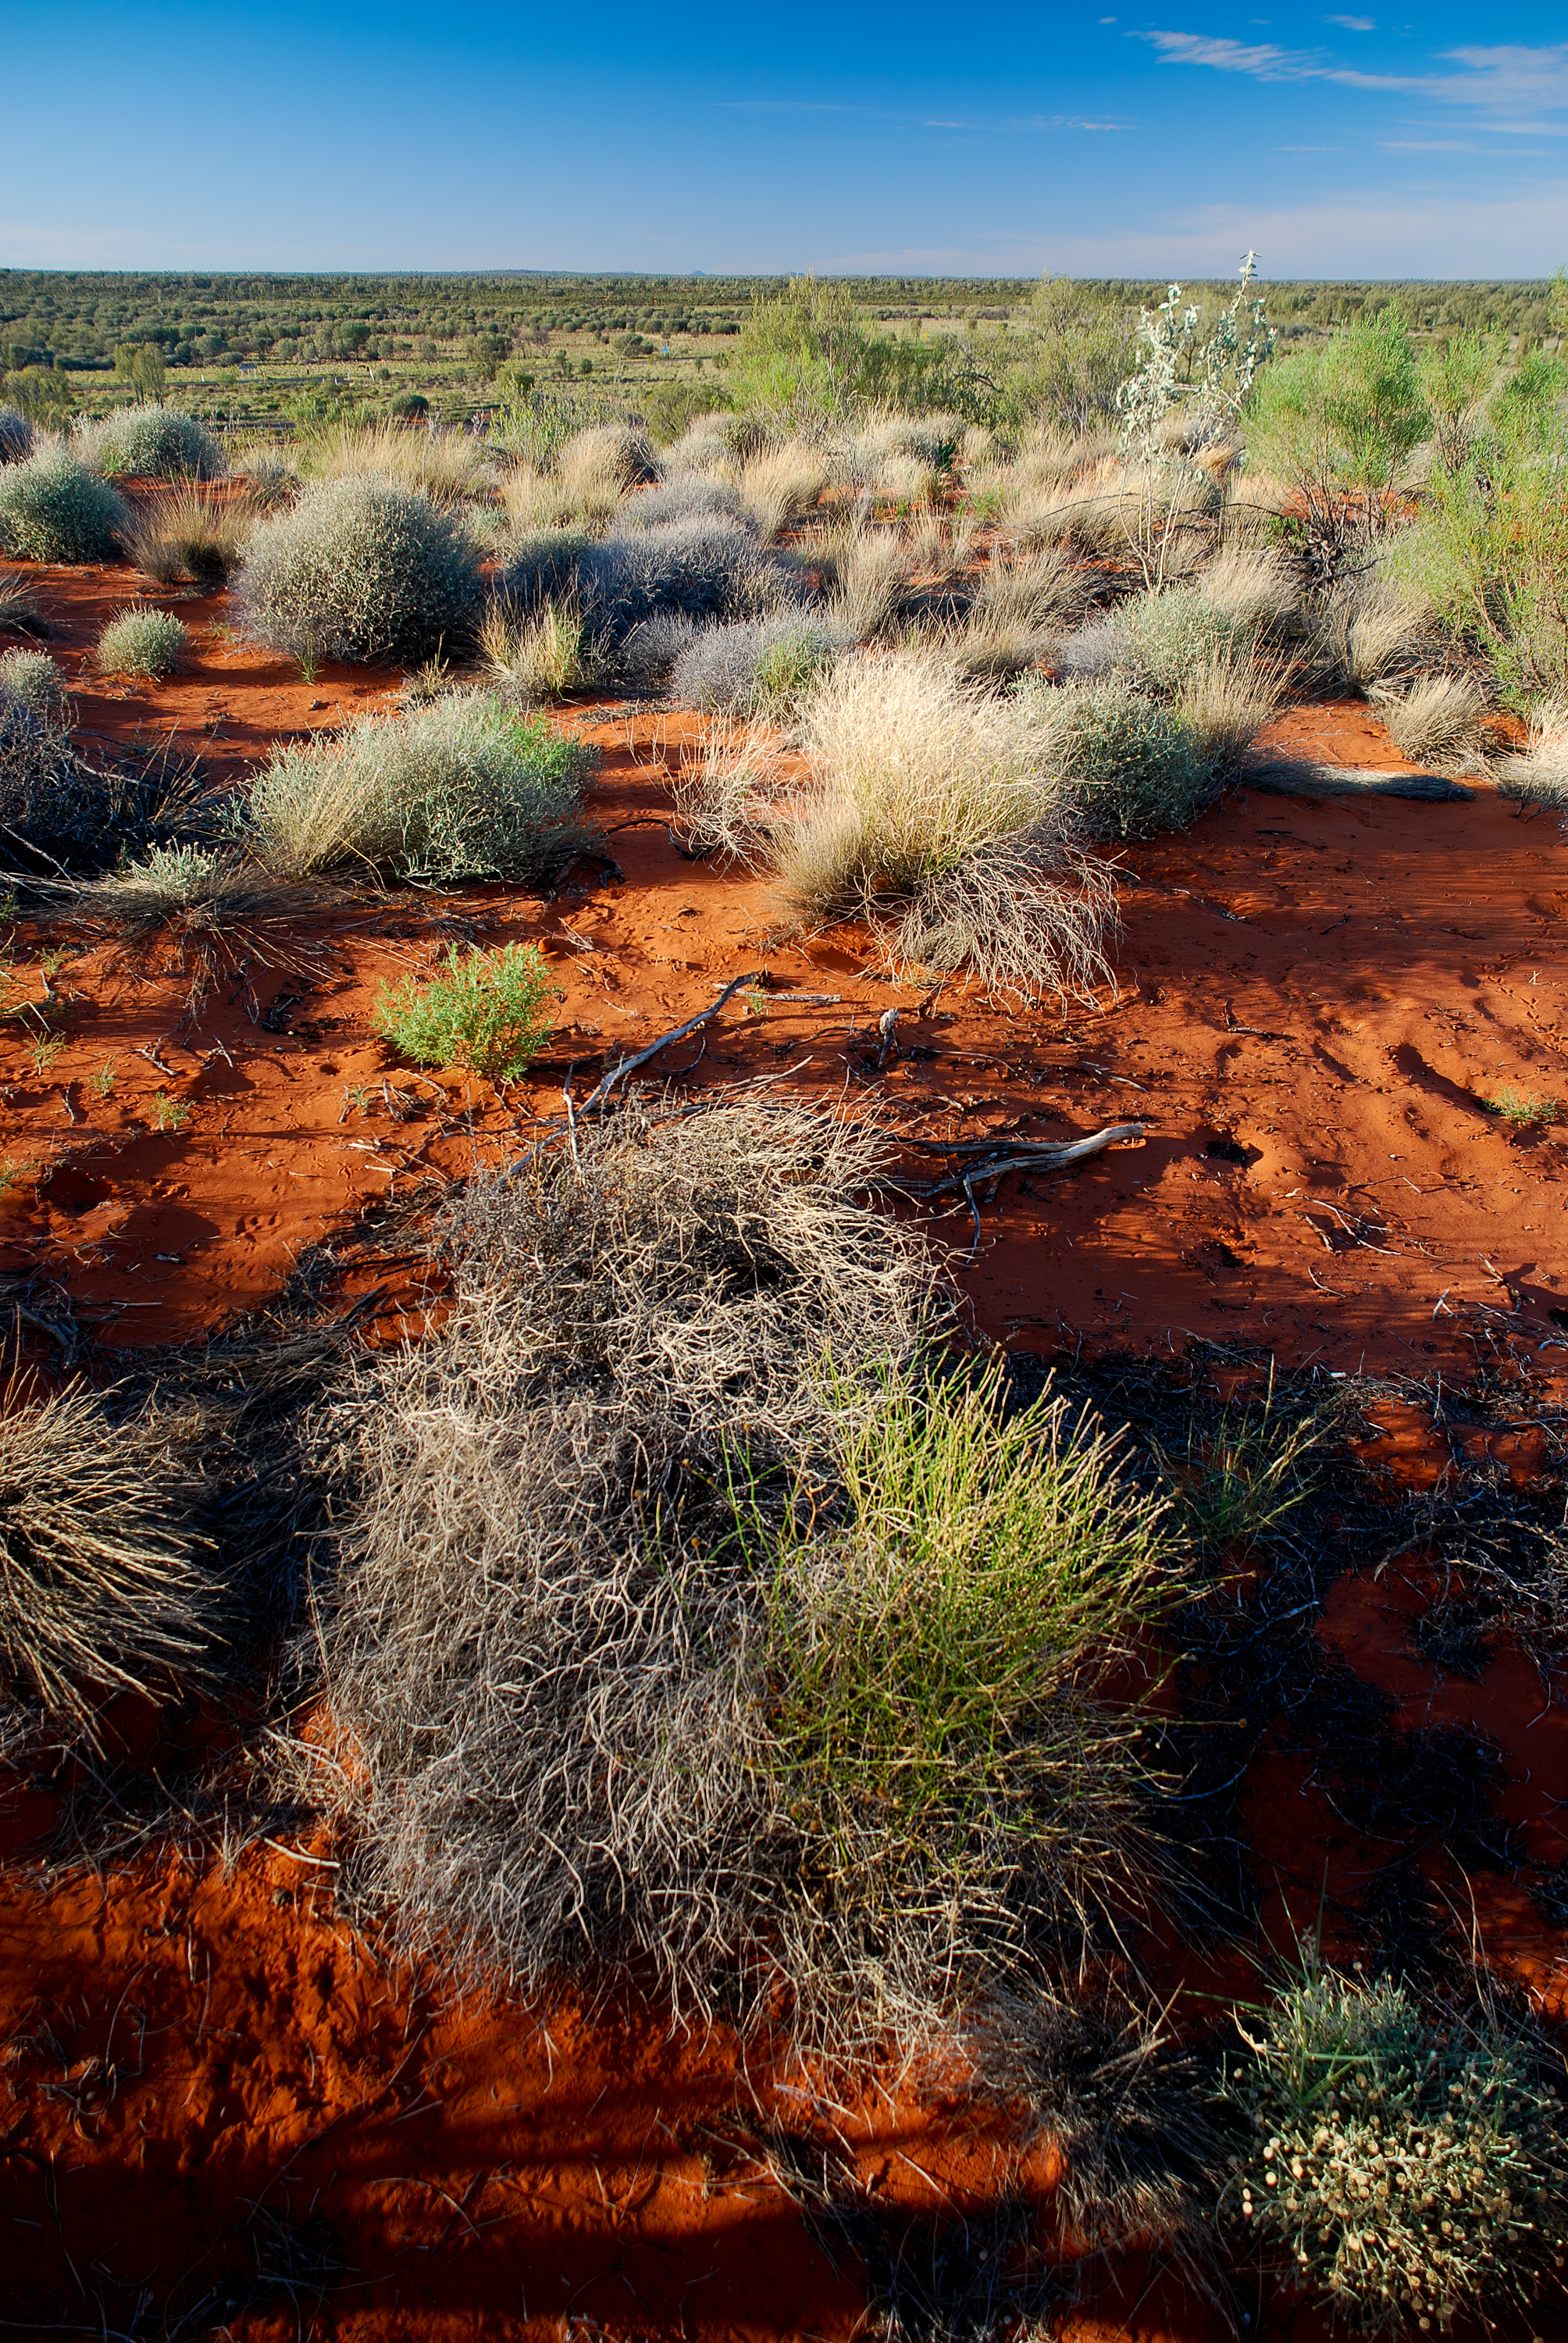 Plants in desert, central Australia (2007)